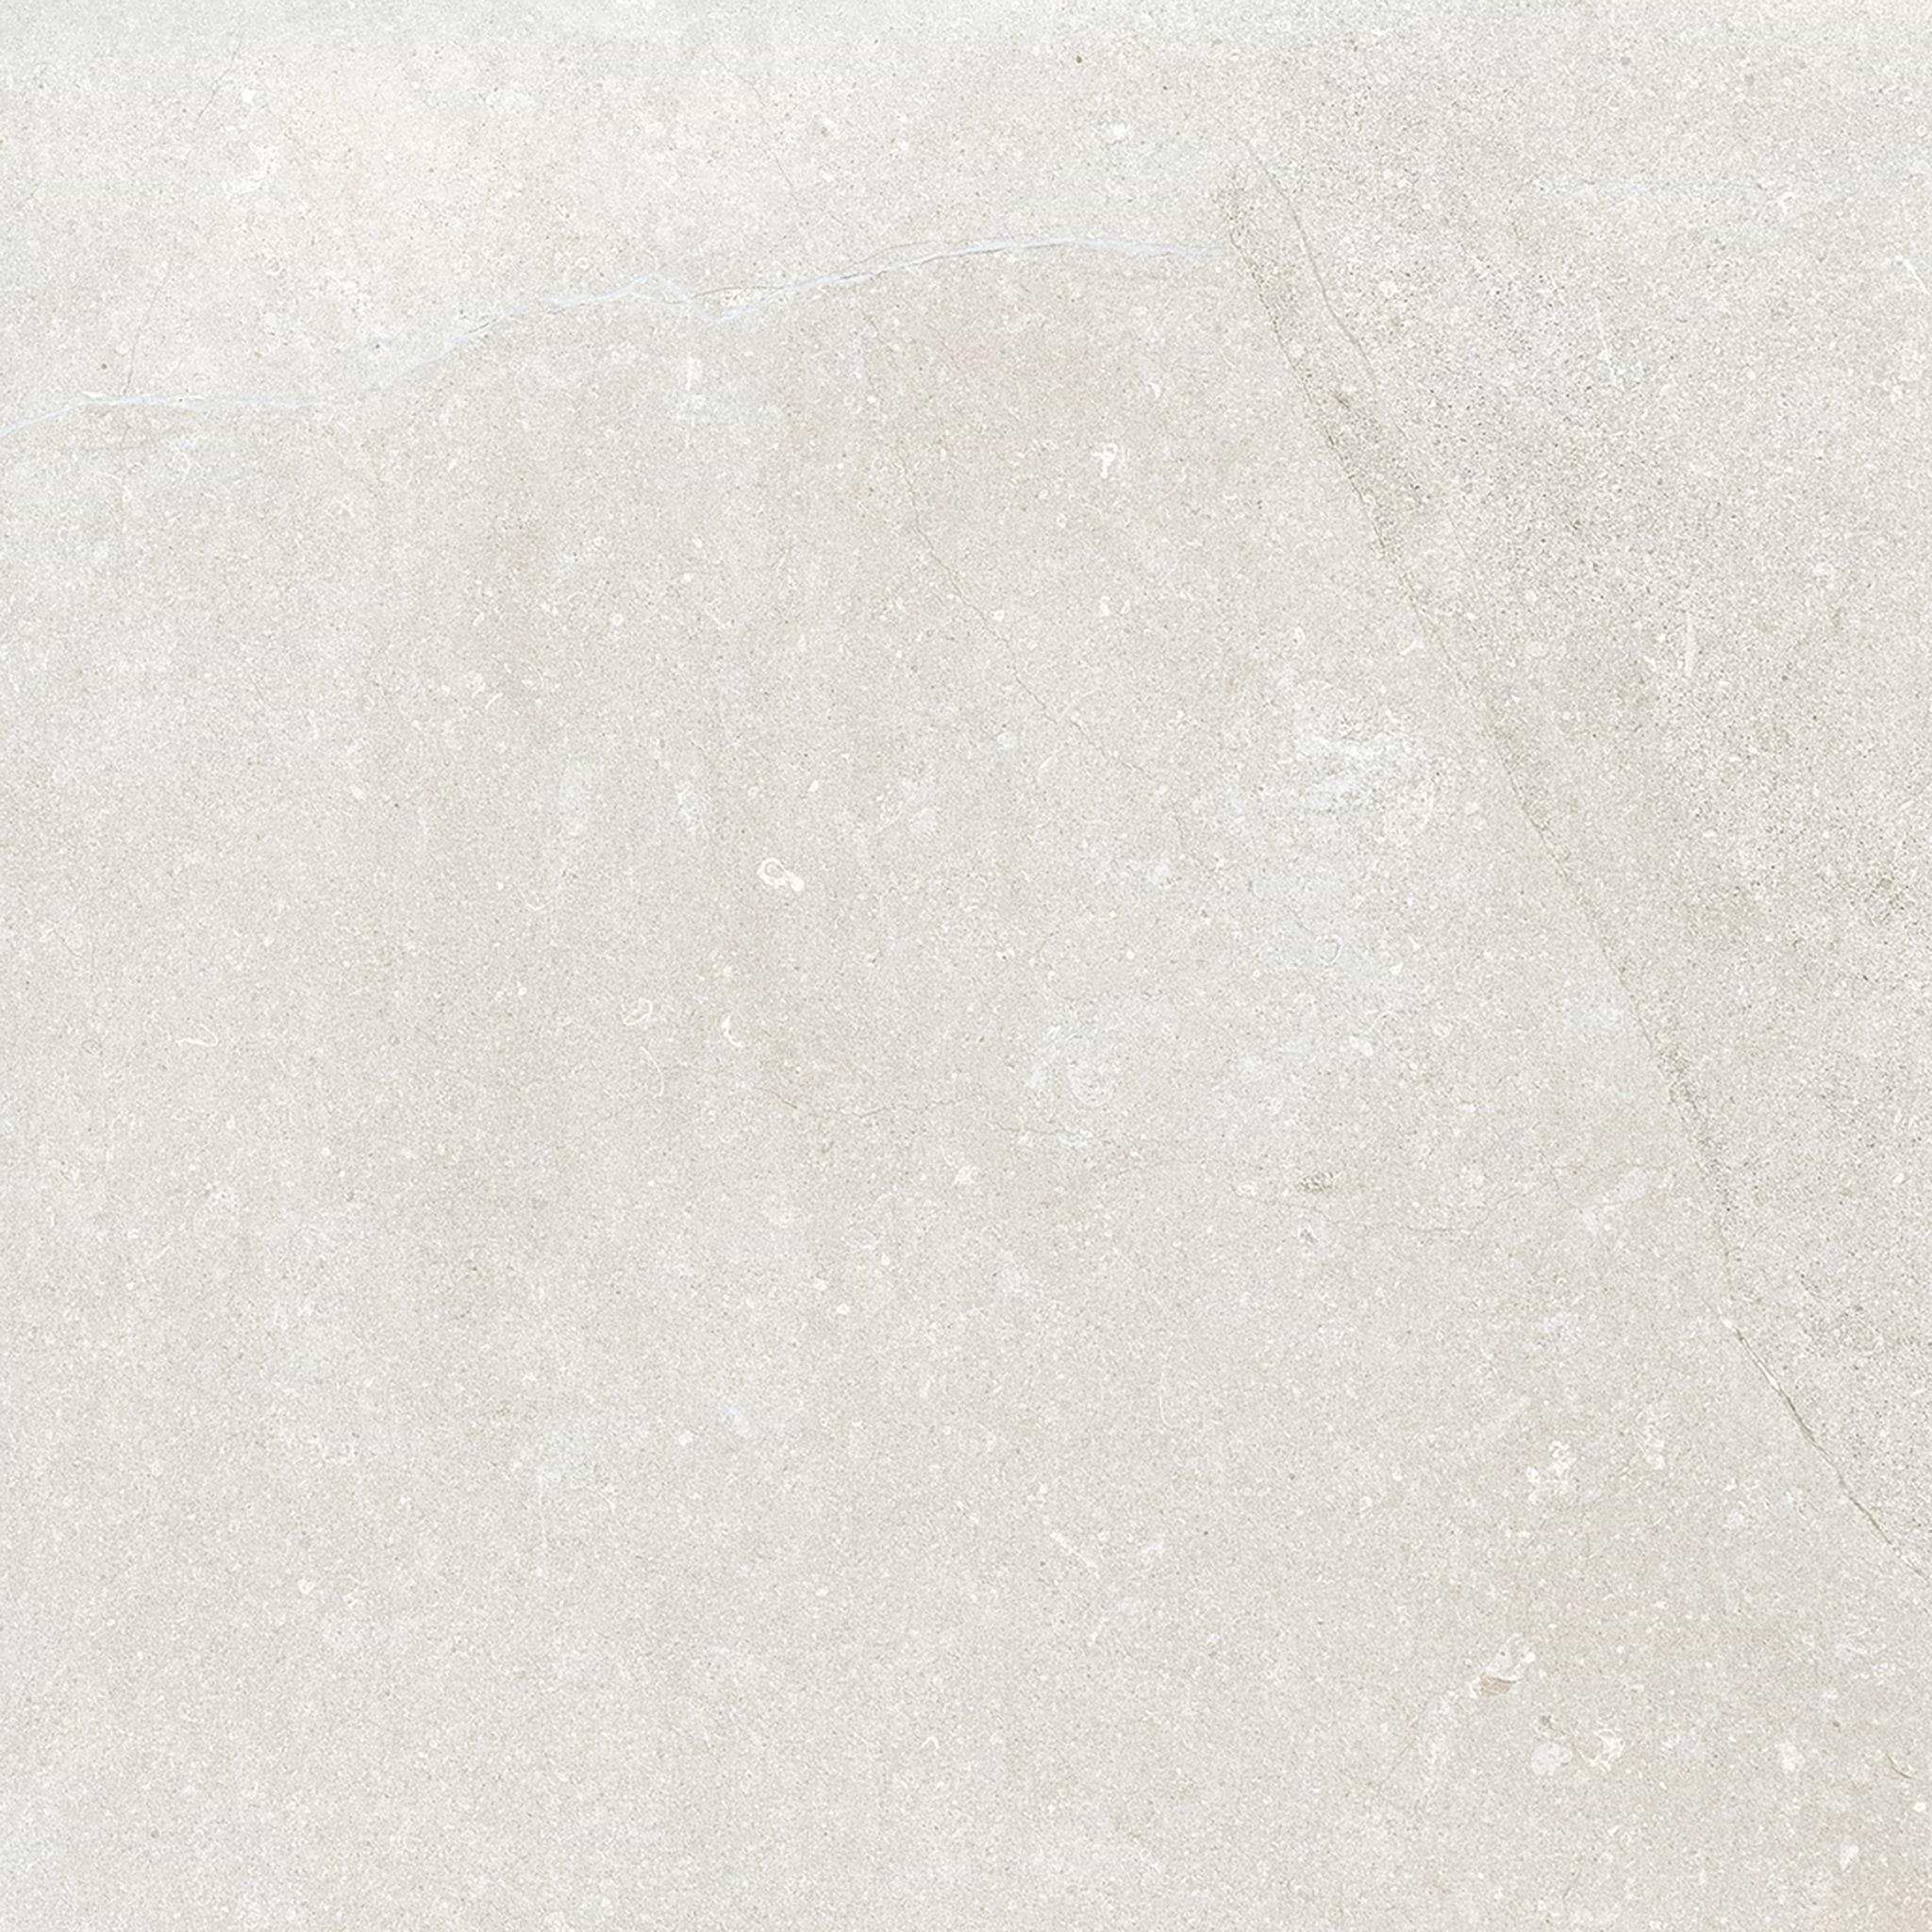 Dorset Porcelain White 80 x 80cm - Hyperion Tiles